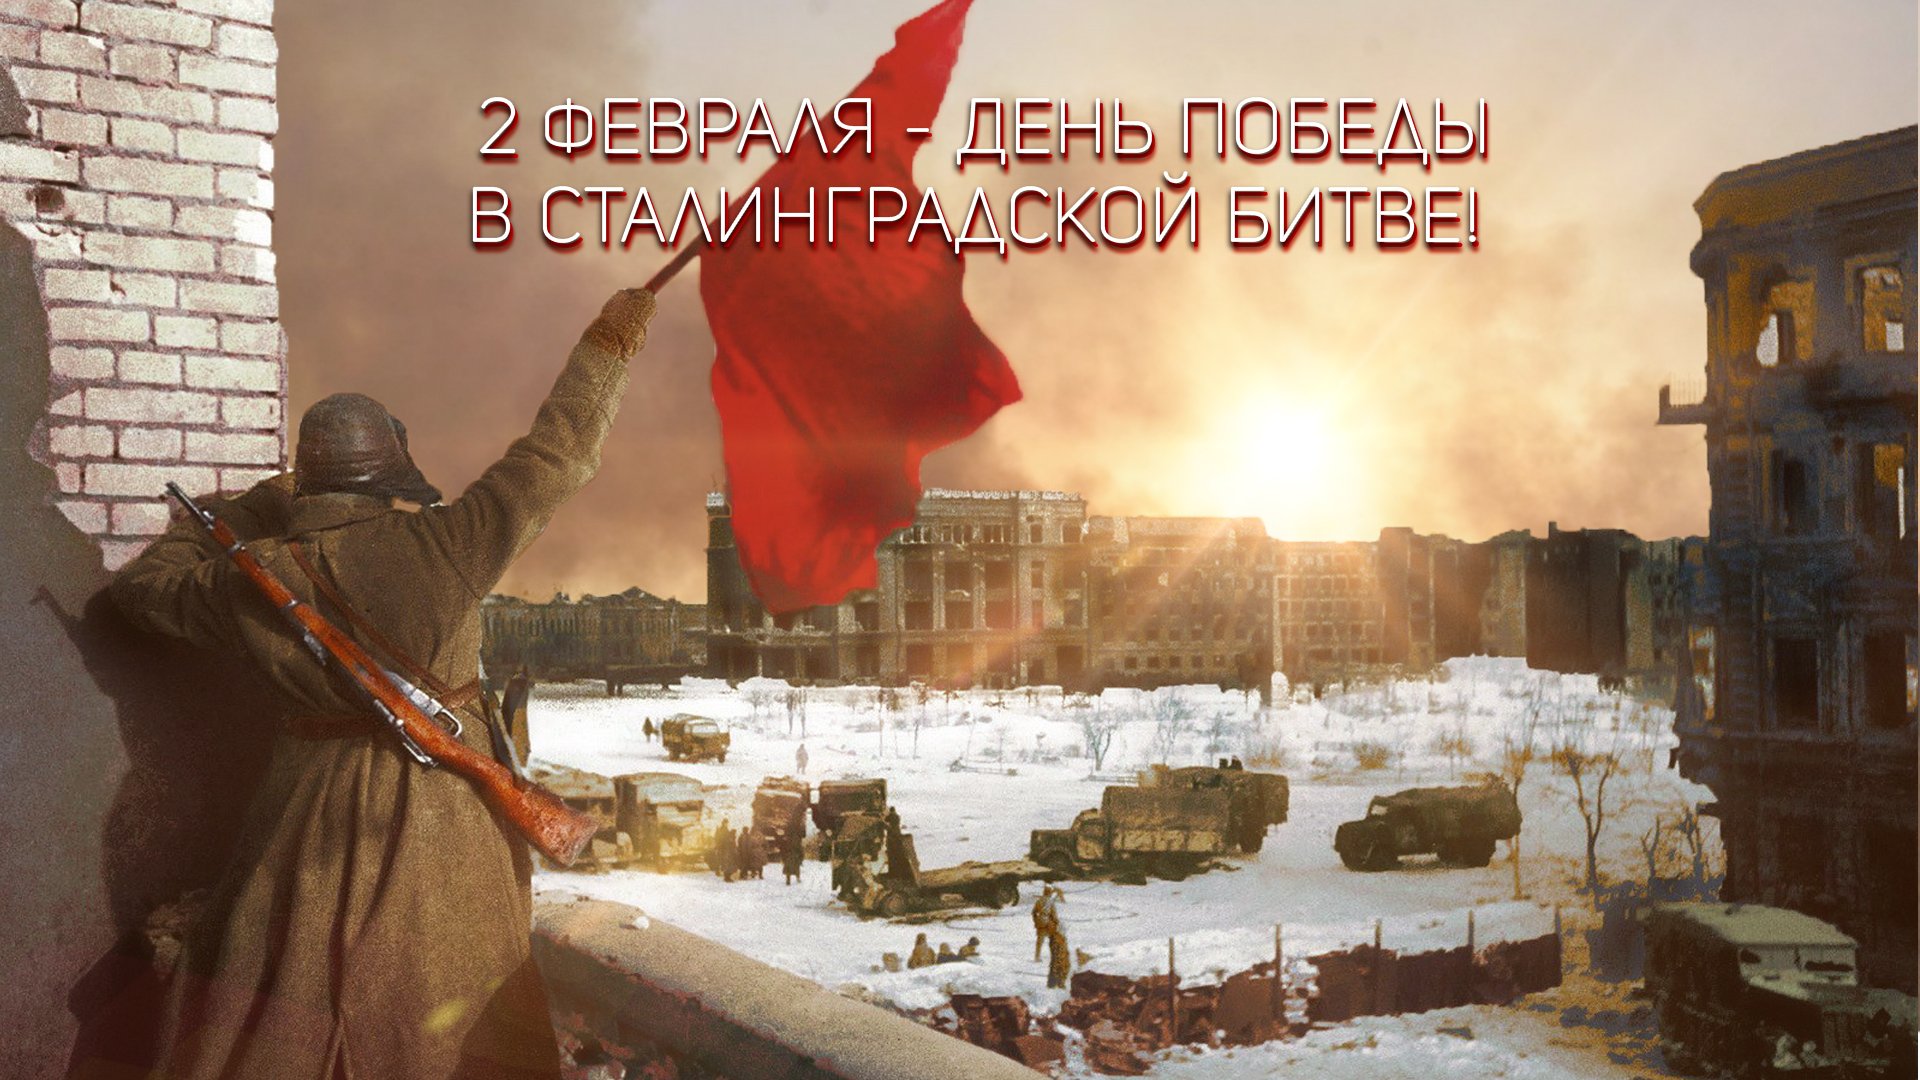 80 letie Pobedy v Stalingradskoj bitve